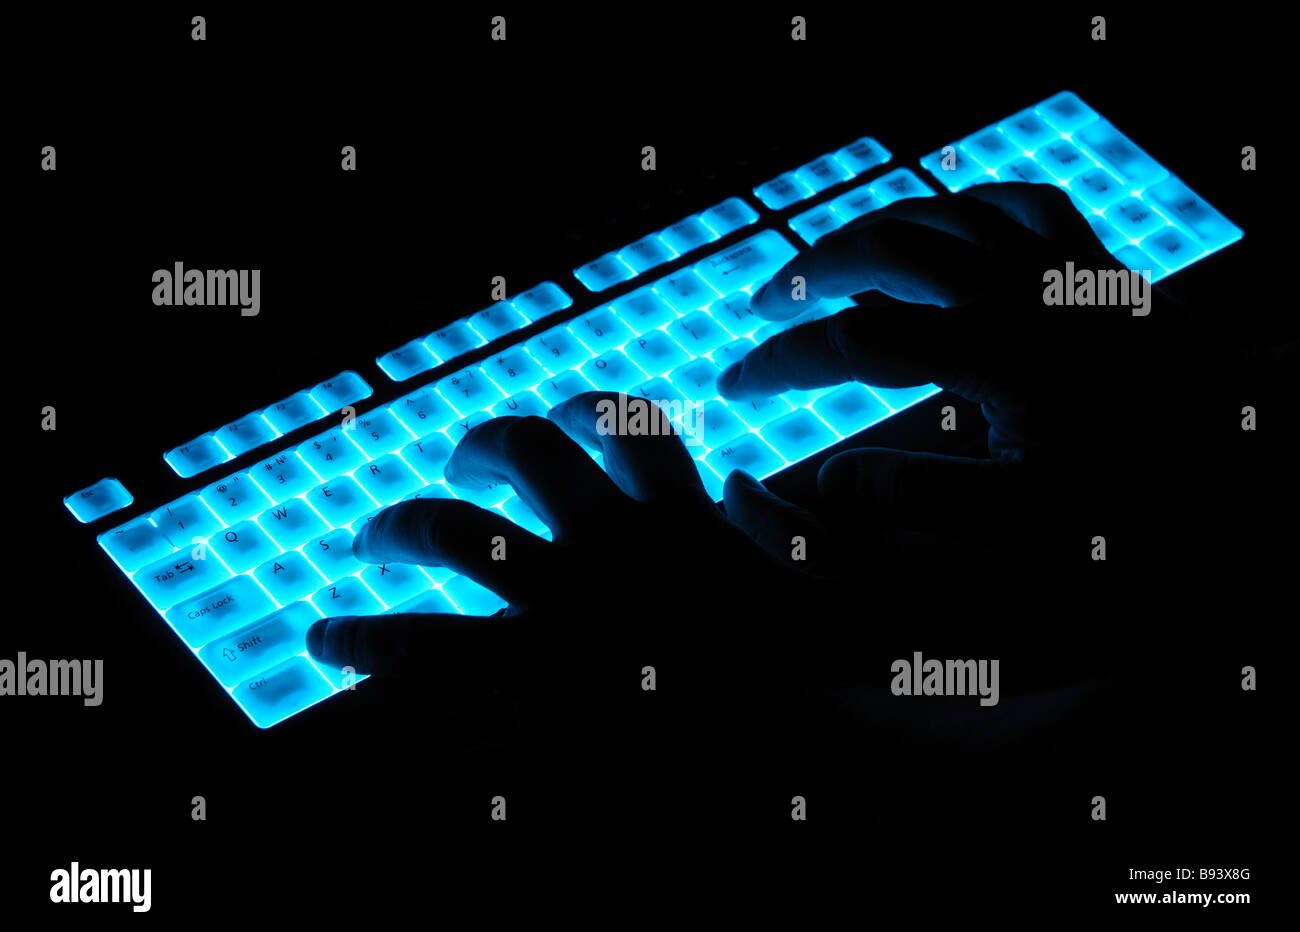 Les mains sur le clavier lumineux Banque D'Images